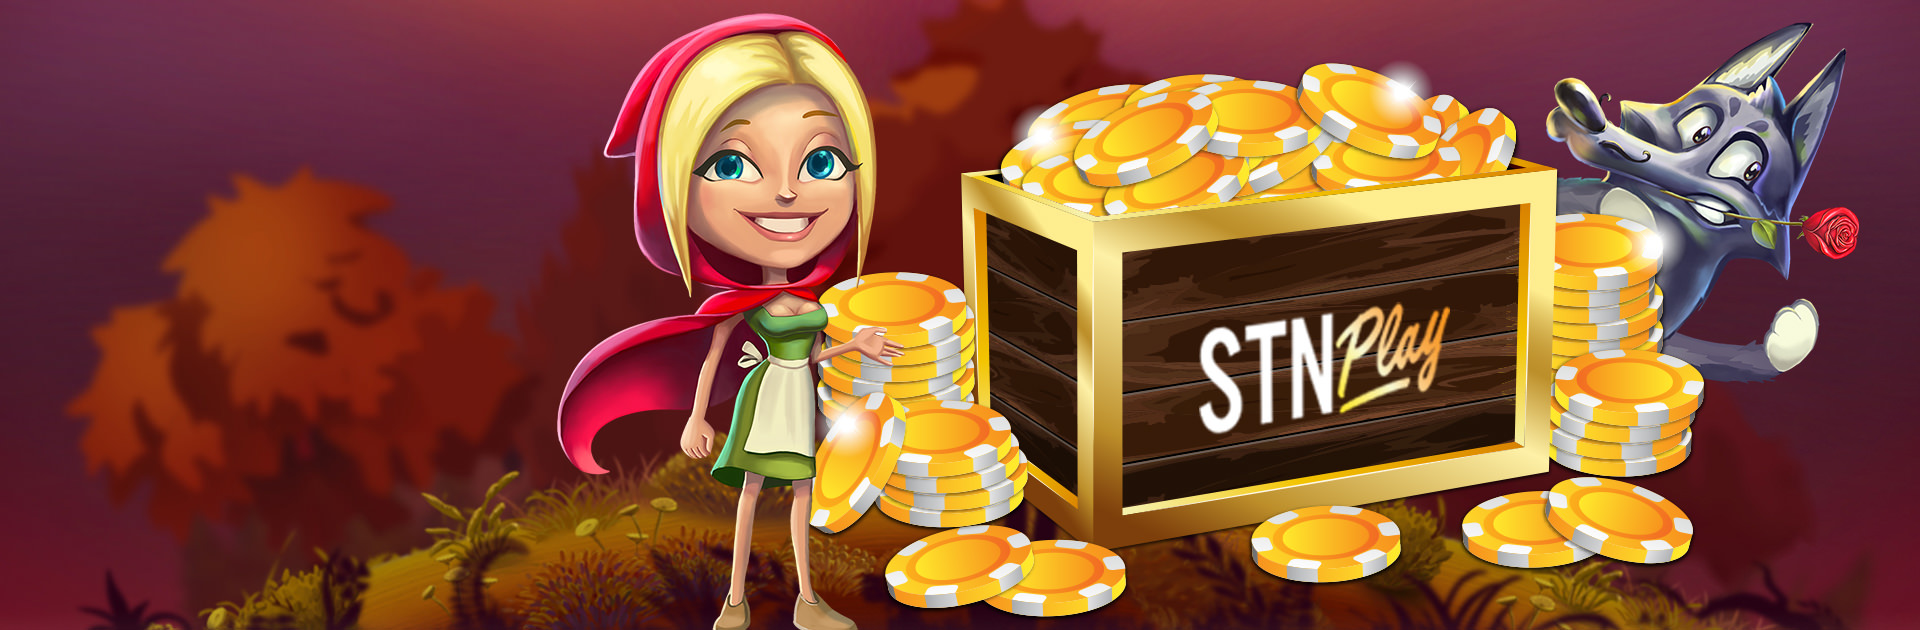 Ist Ihnen spiele Casino cutlasswp.com $ wert?